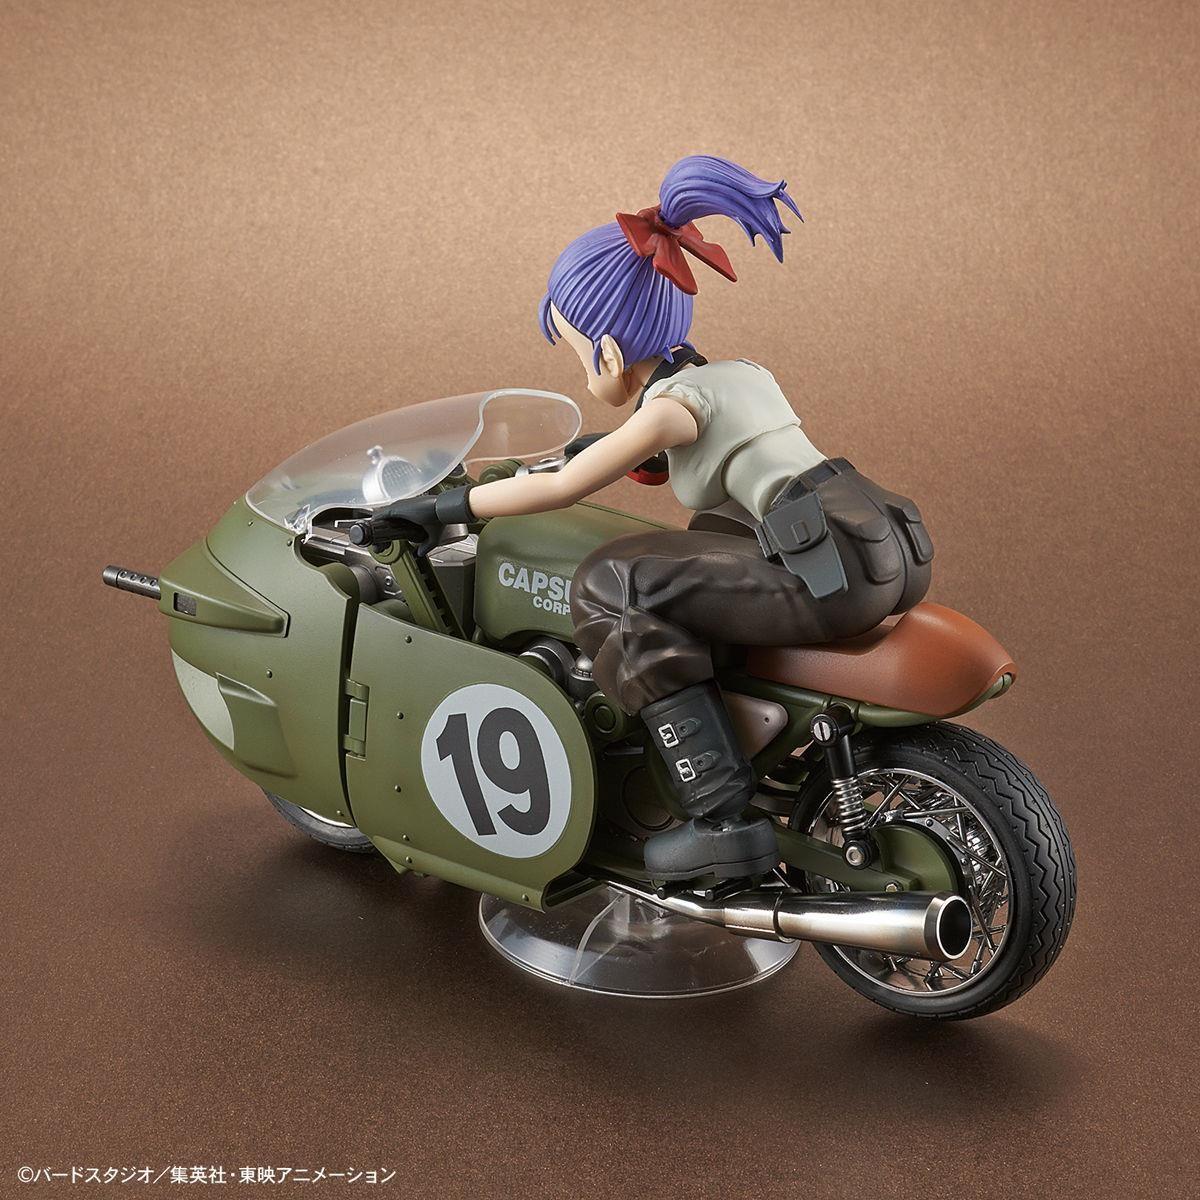 Figurka kolekcjonerska BANDAI Dragon Ball Rise Mechanics Bulma S No.19 Motorcycle